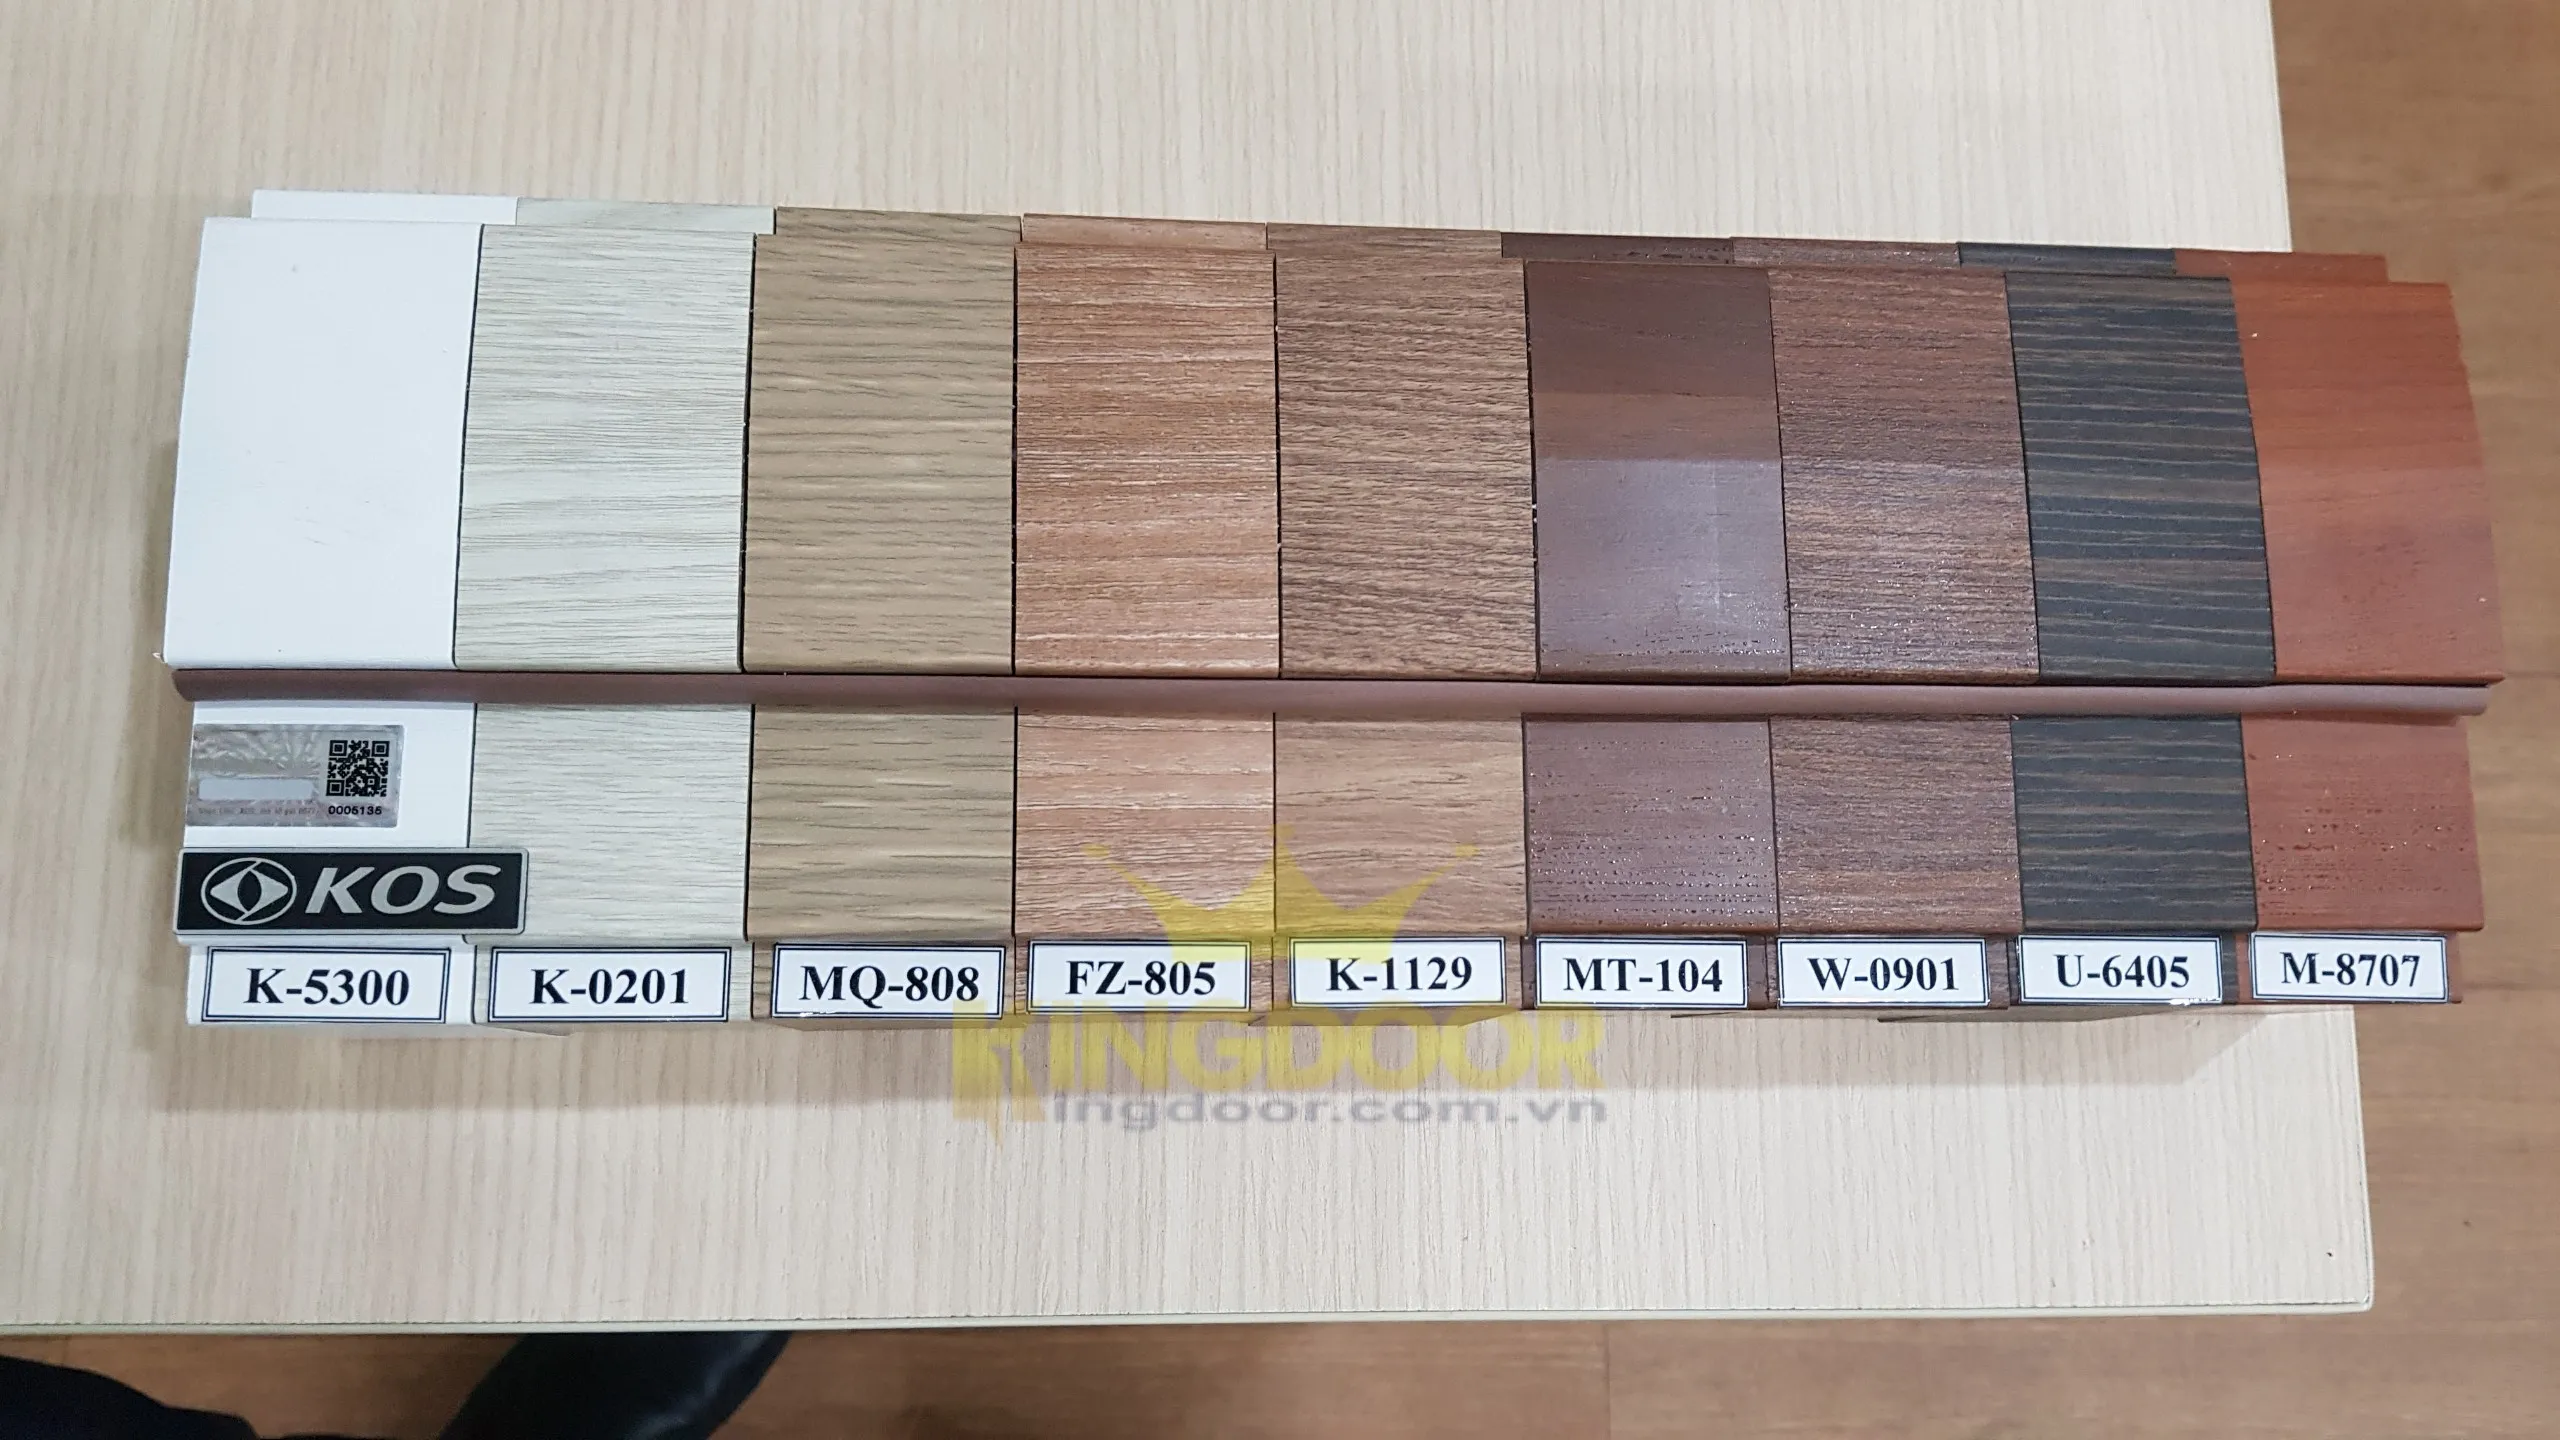 Bảng màu cửa nhựa giả gỗ ABS Hàn Quốc chính hãng.